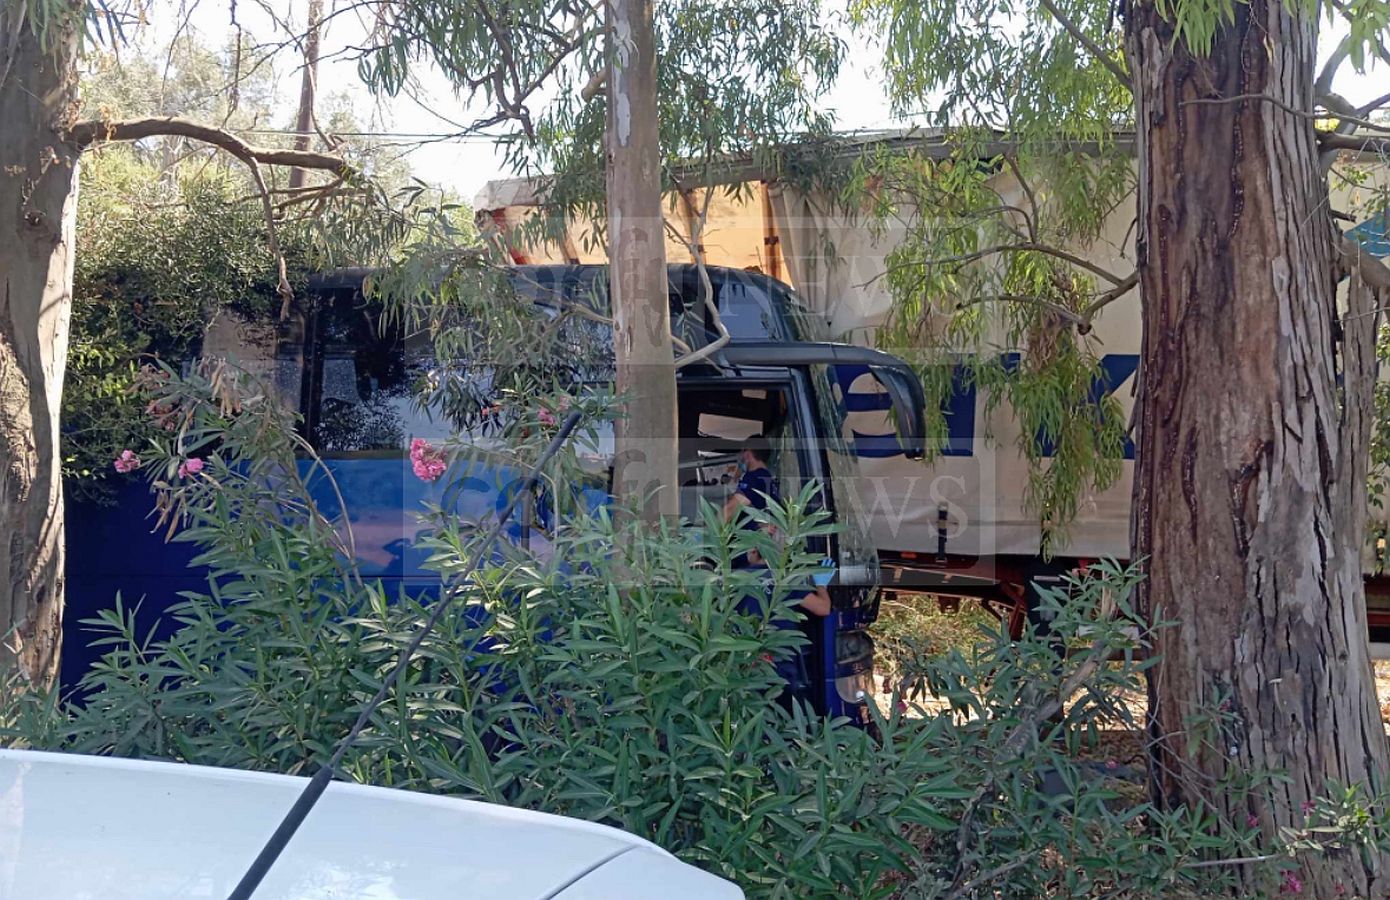 Ένας νεκρός και δύο σοβαρά τραυματίες από σύγκρουση τουριστικού λεωφορείου με φορτηγό στην Κέρκυρα